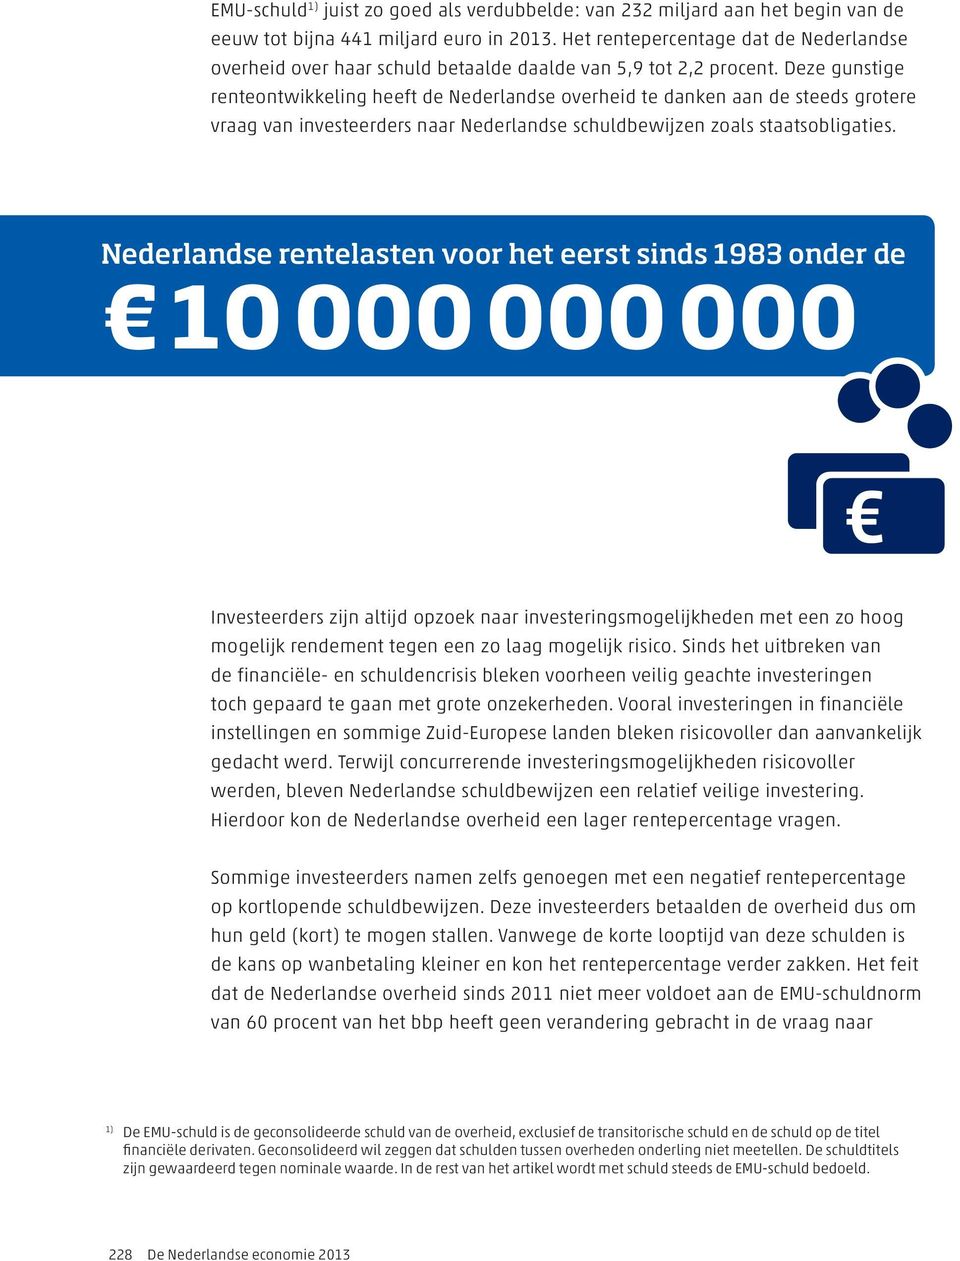 Deze gunstige renteontwikkeling heeft de Nederlandse overheid te danken aan de steeds grotere vraag van investeerders naar Nederlandse schuldbewijzen zoals staatsobligaties.